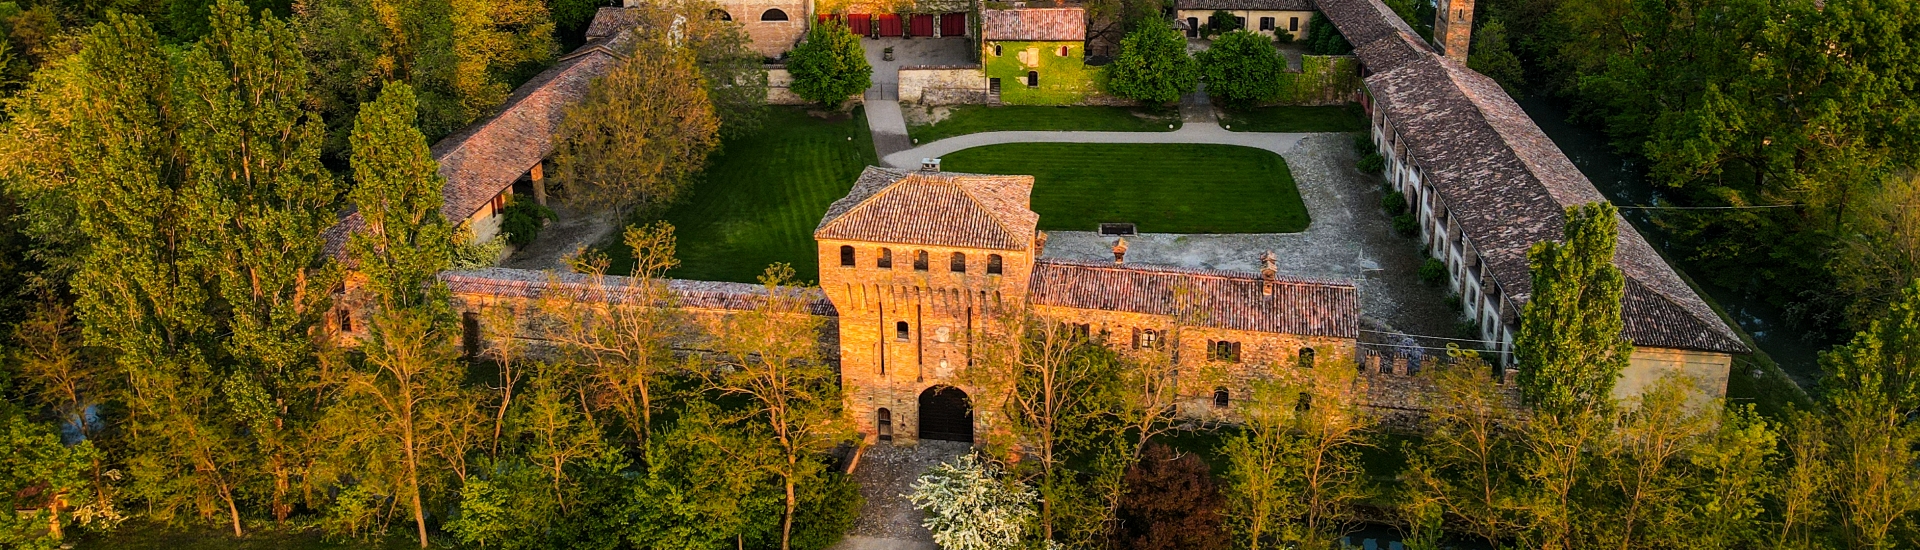 Castello di Paderna - Drone viem photo credits: |Guido Citterio| - Archivio del castello